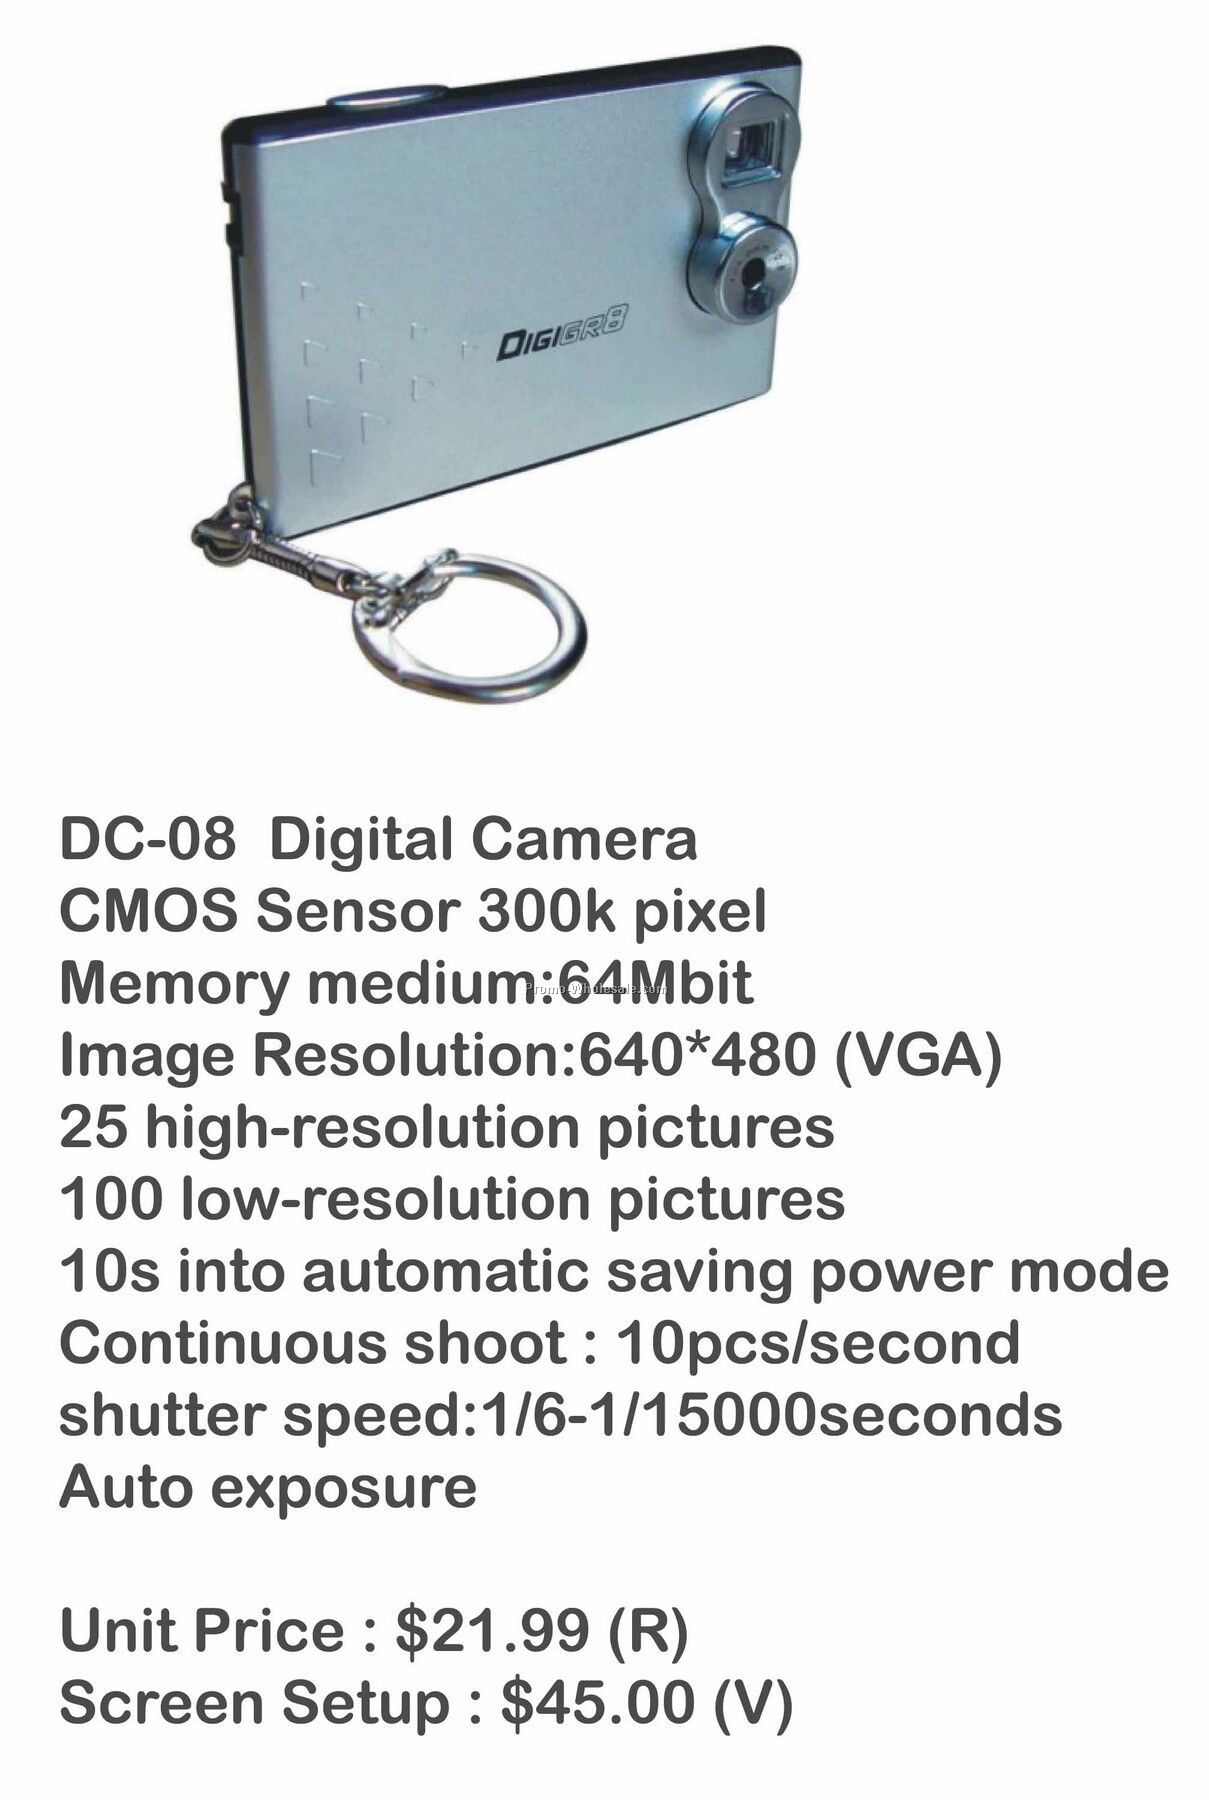 Digital Camera, Video Camera, Web Cam, Stores Photos, 64mb Memory